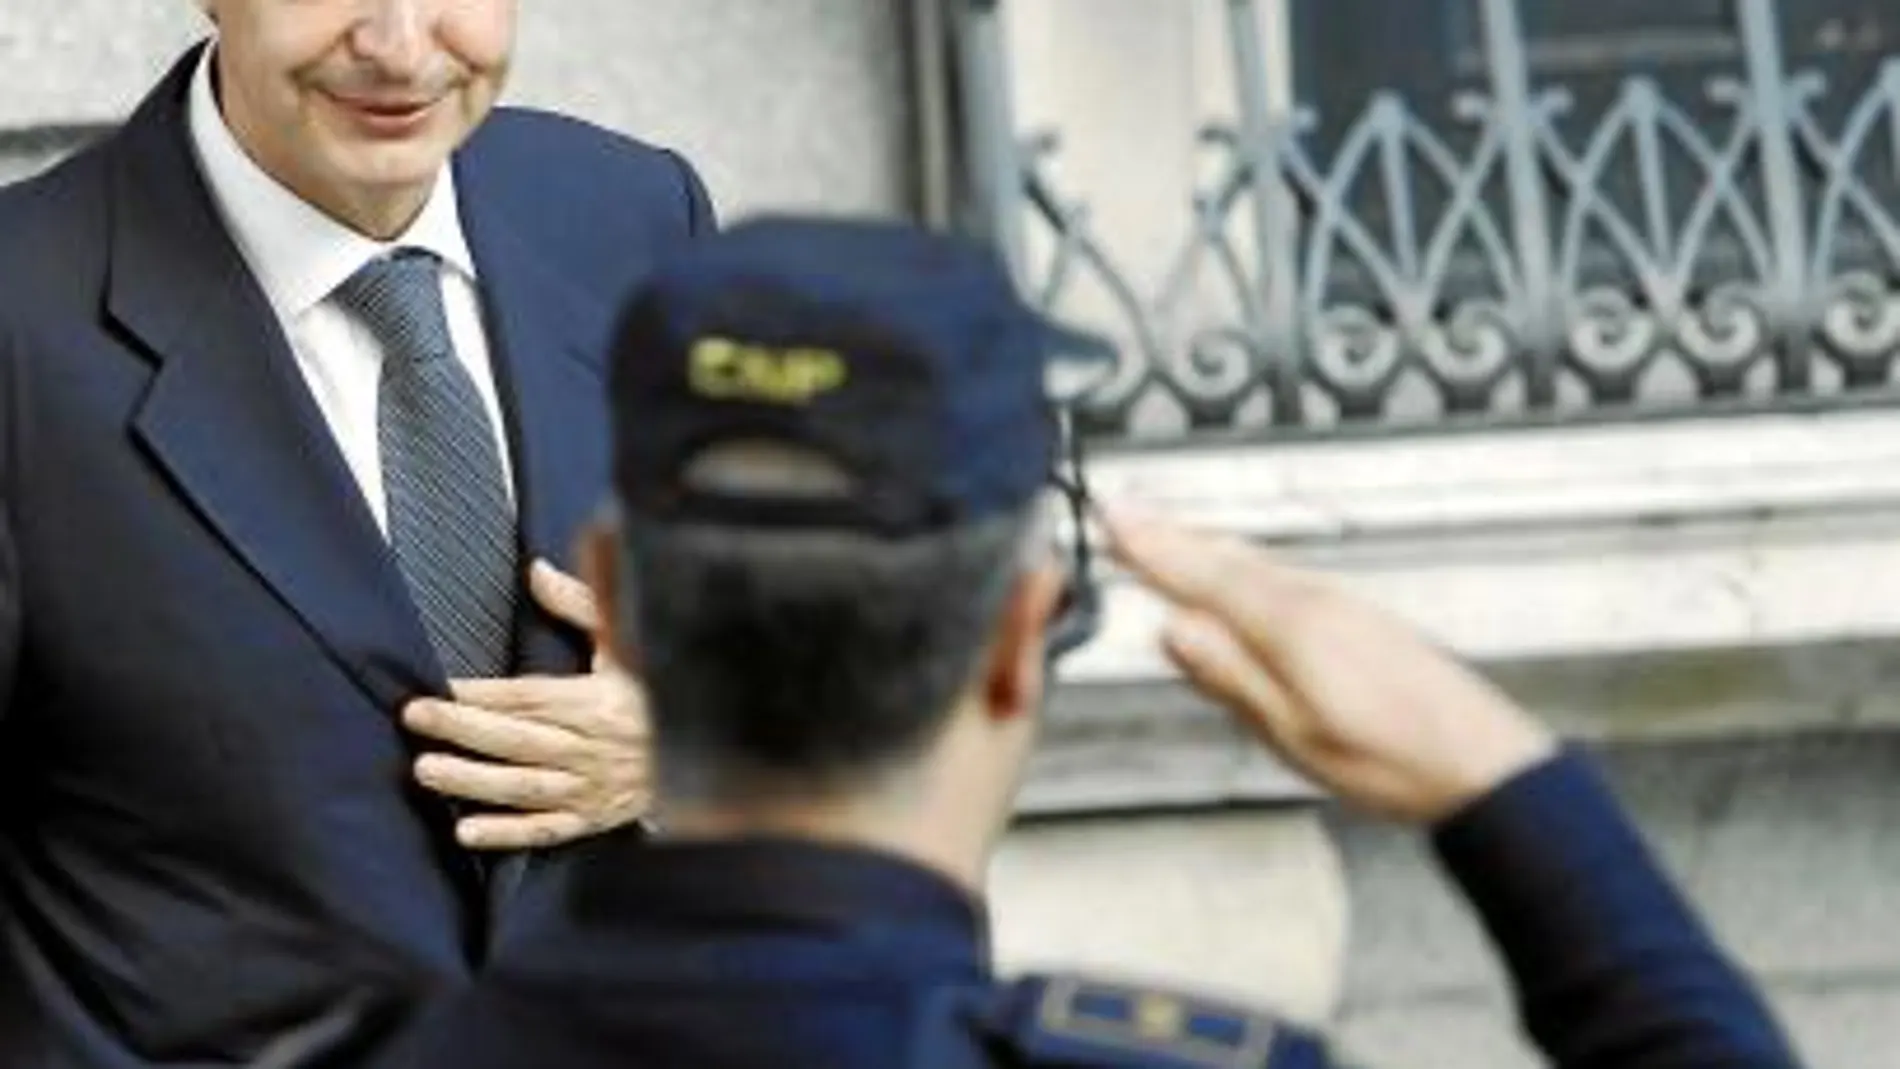 Un agente de la Policía saluda al presidente del Gobierno a la salida del Congreso de los diputados, donde ayer hubo un tenso Pleno